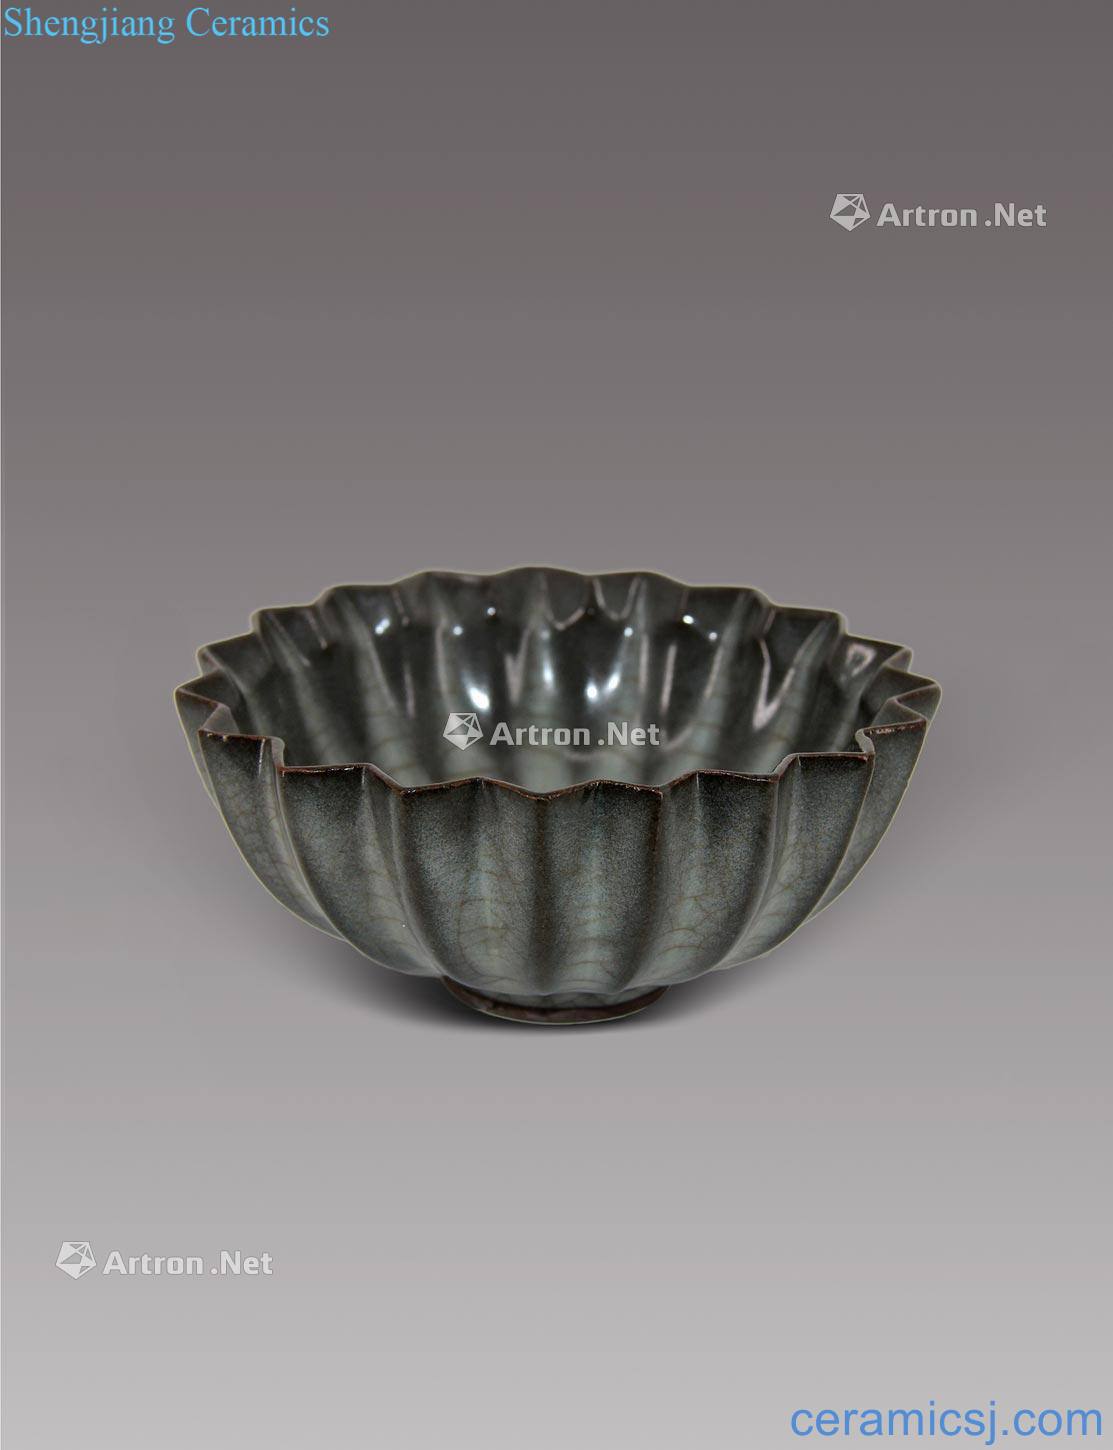 The song dynasty Kiln melon leng bowl